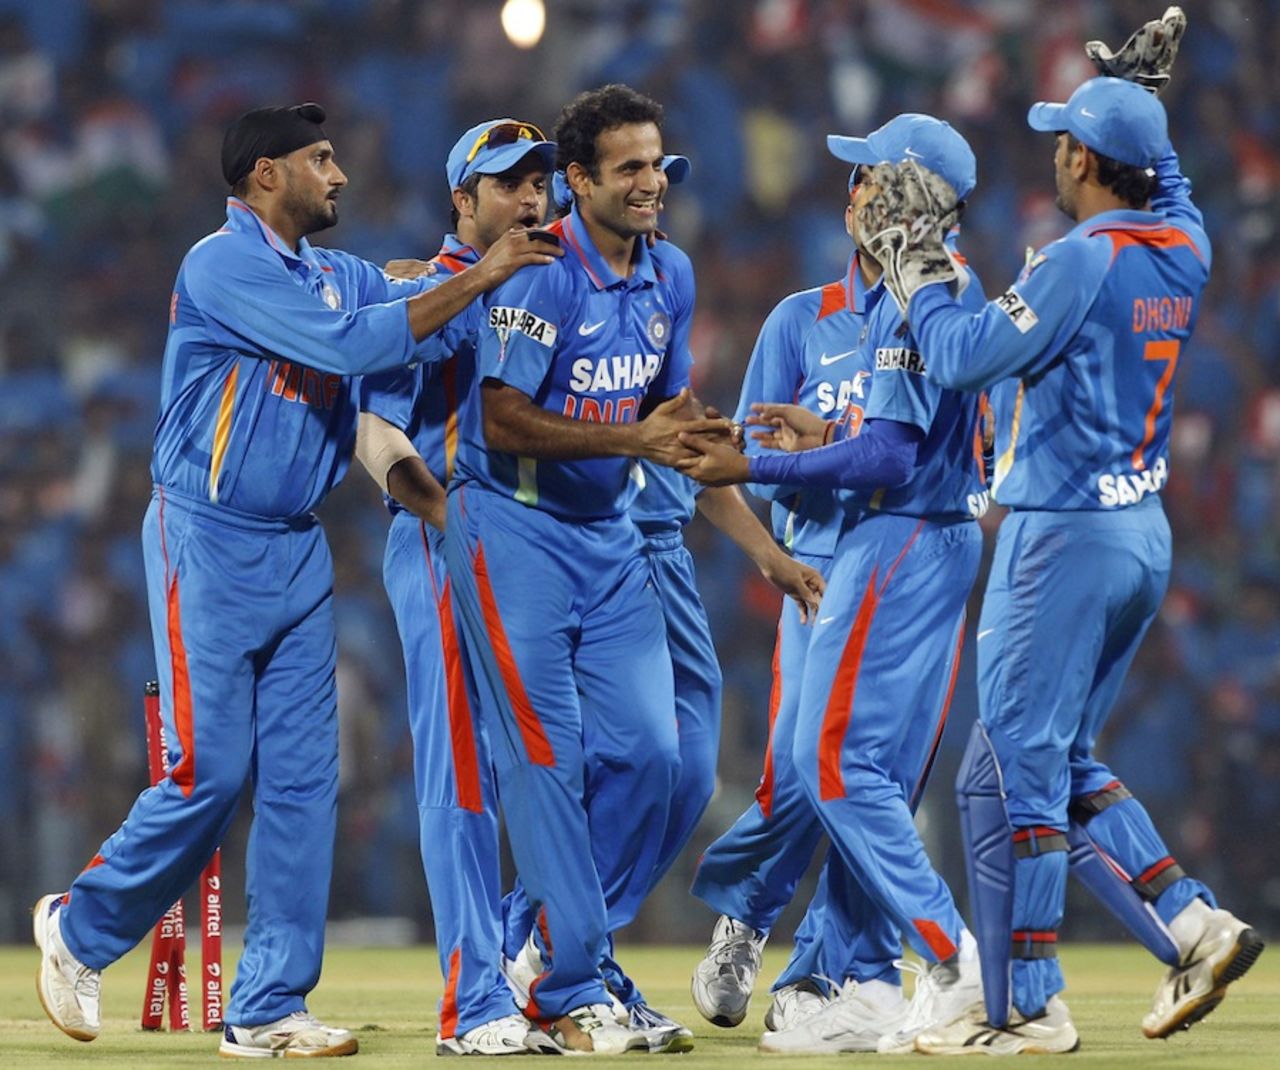 Irfan Pathan celebrates the wicket of Martin Guptill, India v New Zealand, 2nd T20I, Chennai, September 11, 2012